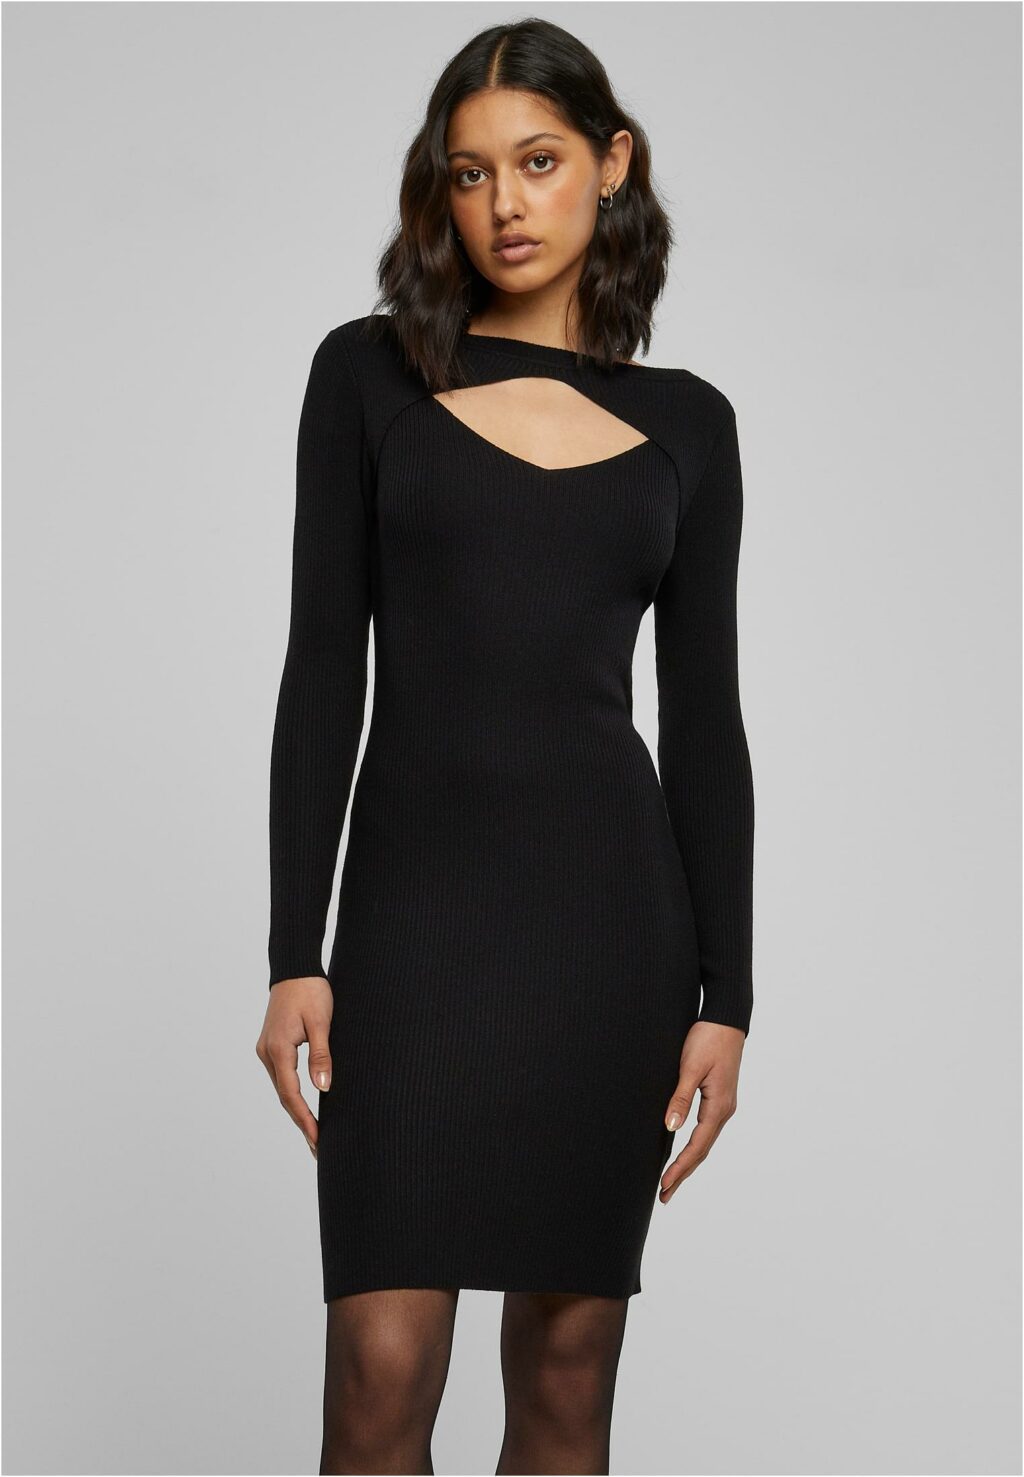 Urban Classics Ladies Cut Out Dress black TB1742